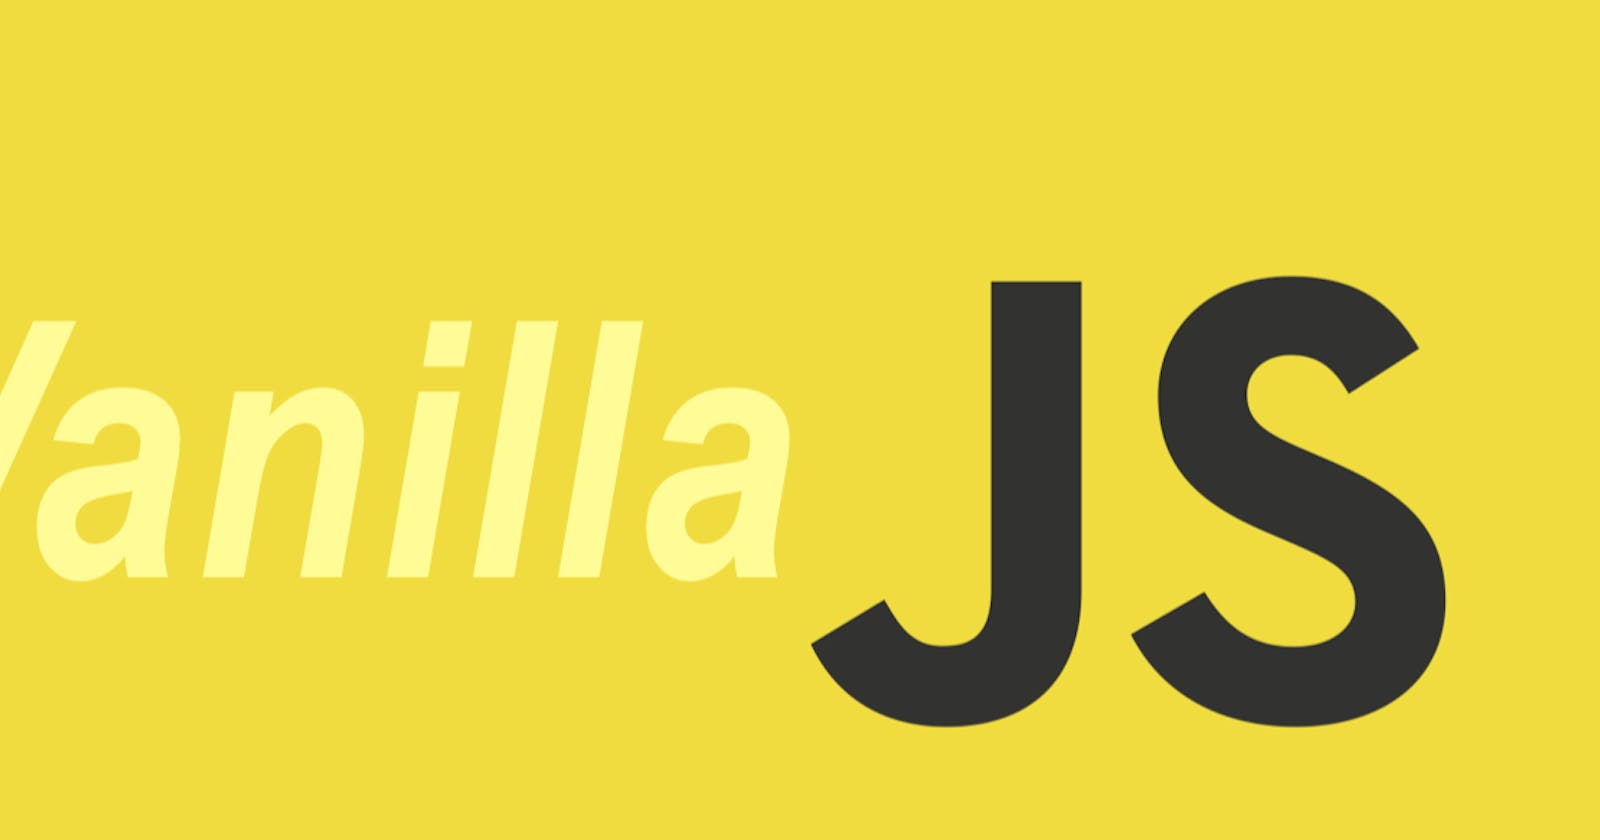 Exploring Vanilla JS / part 3